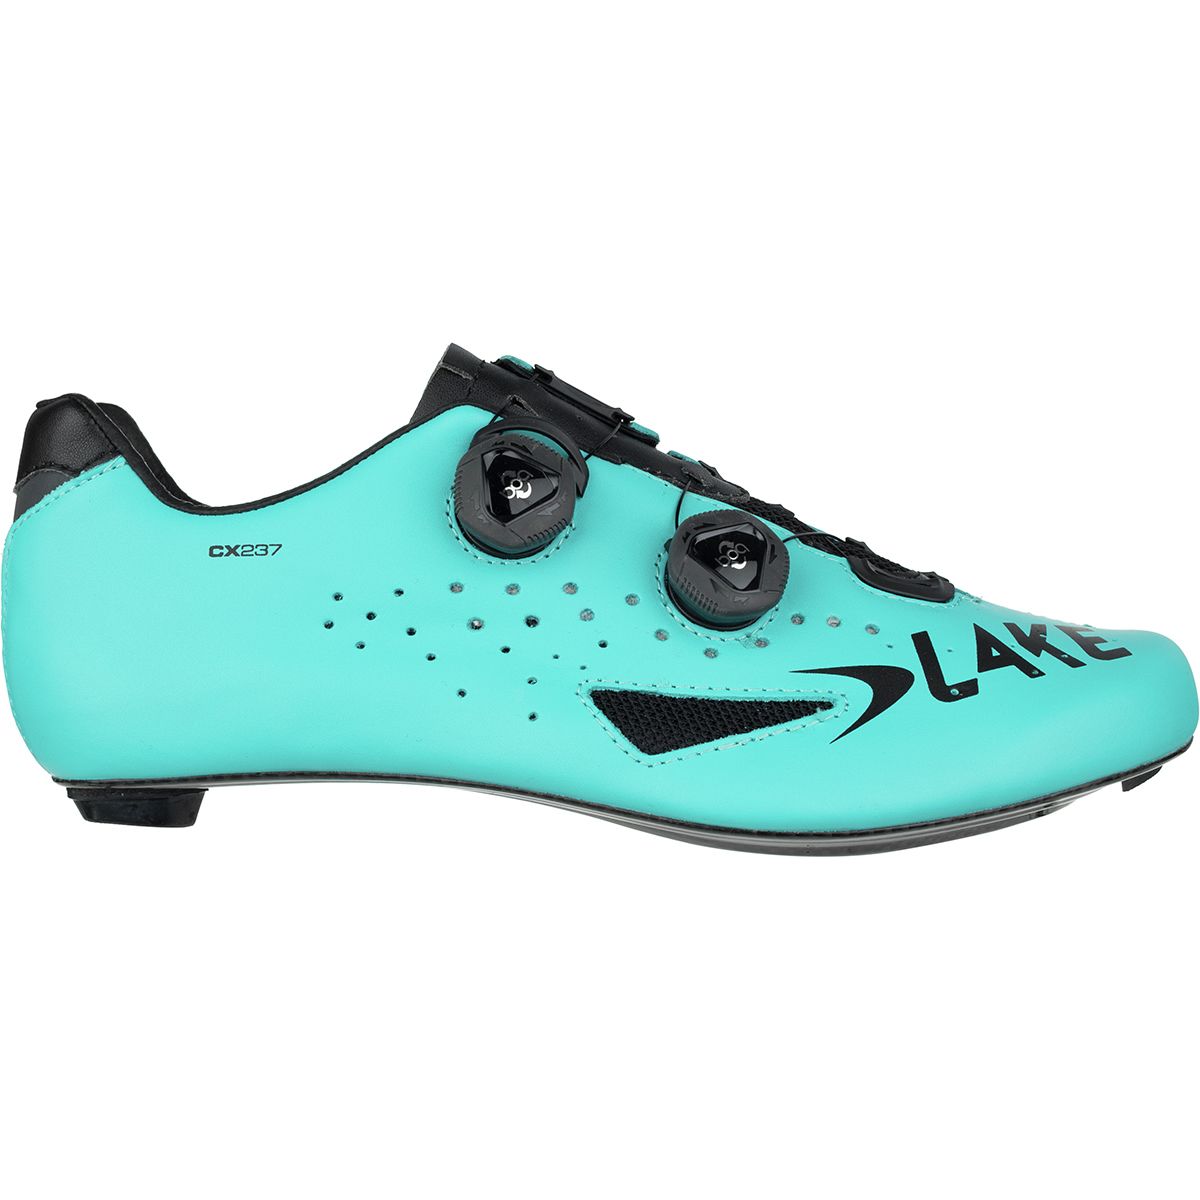 Lake CX237 Cycling Shoe - Men's